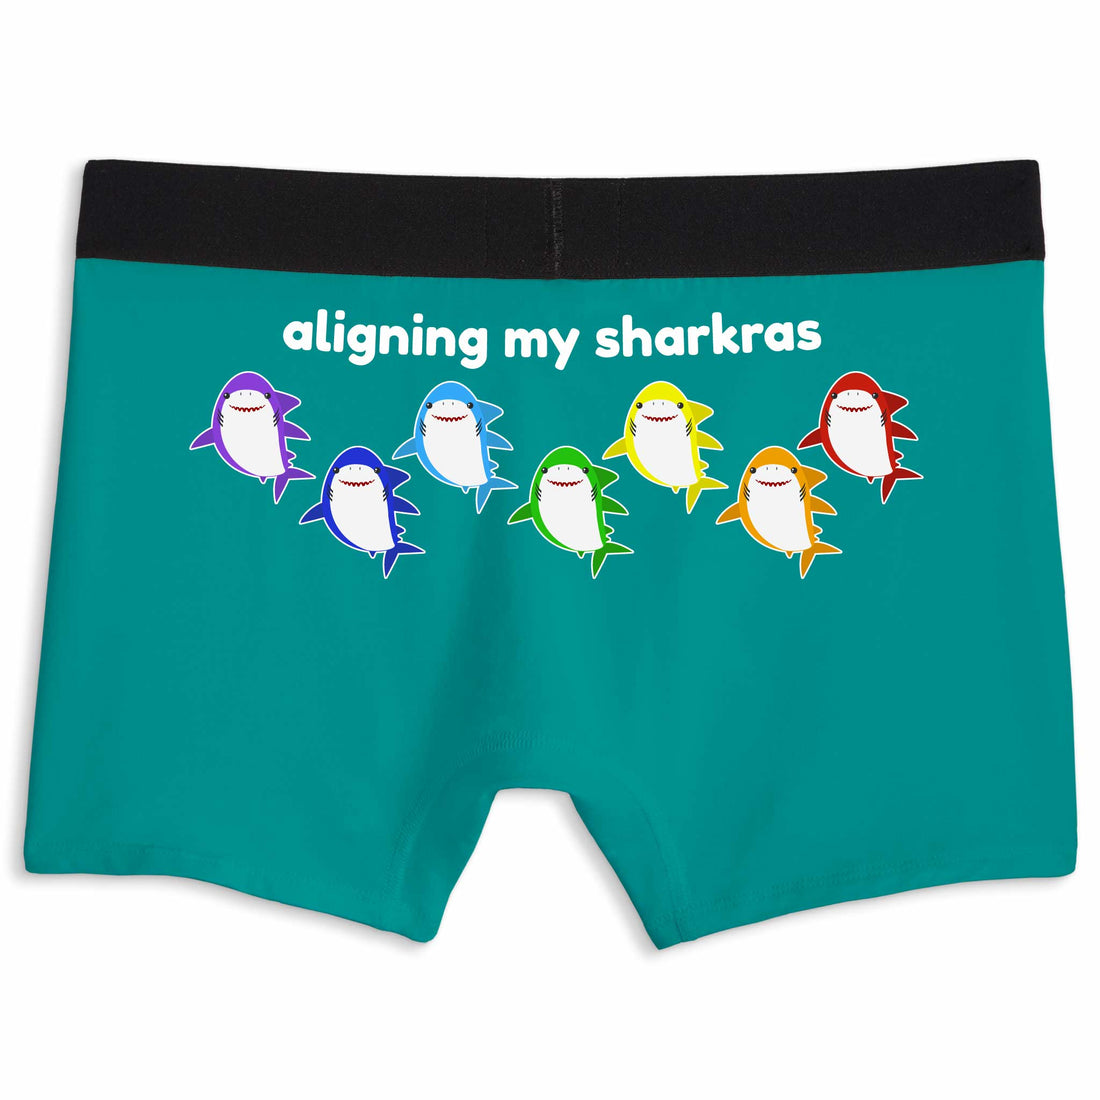 Aligning my sharkras | Boxer briefs underwear